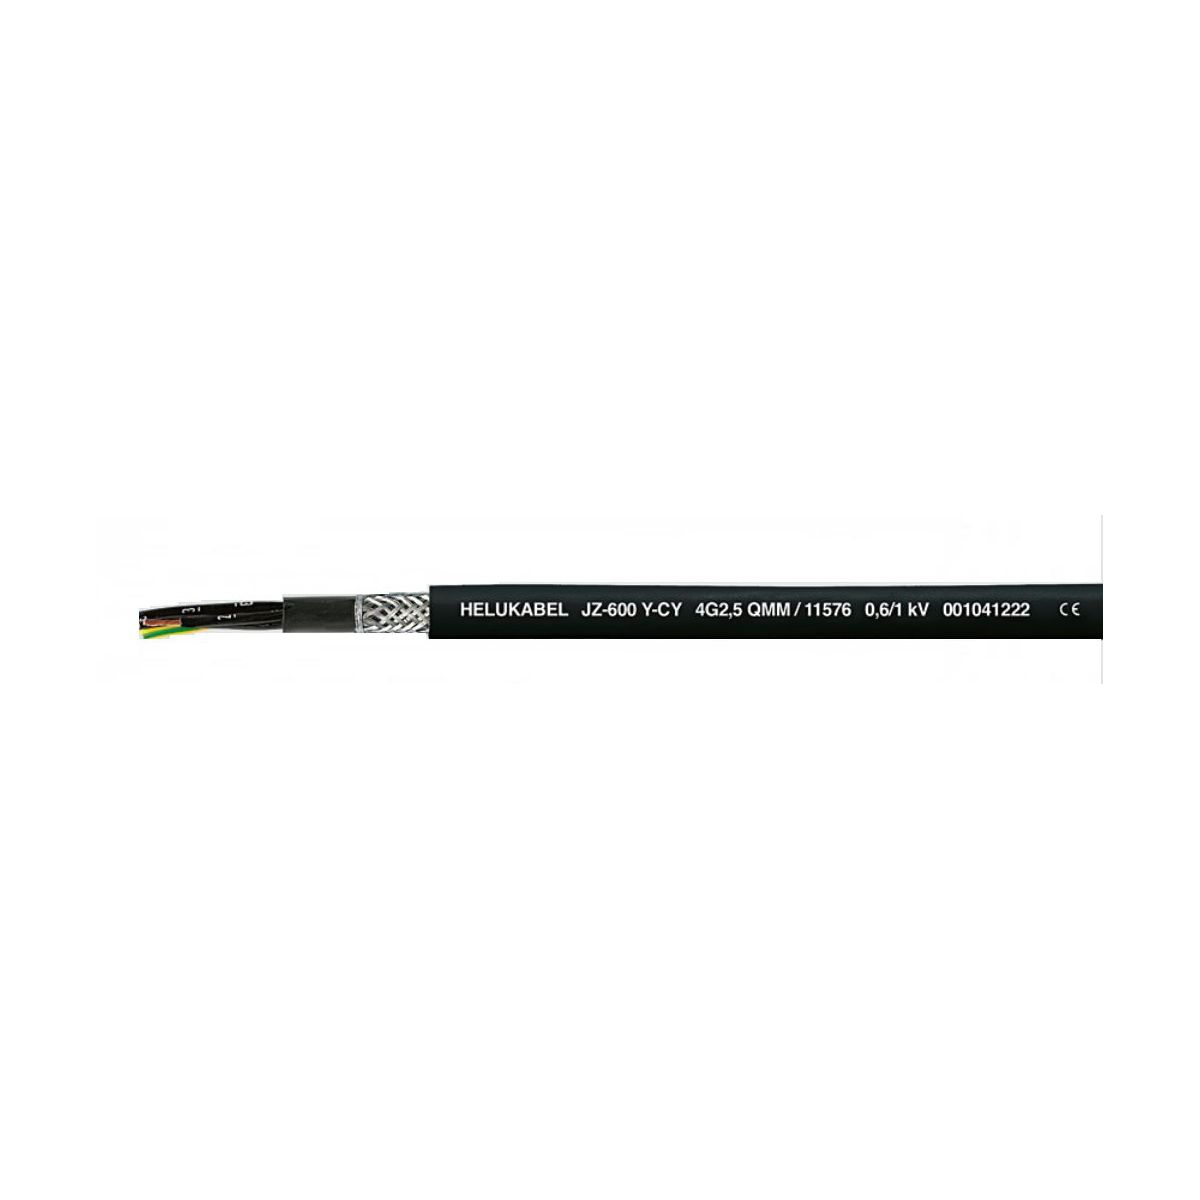 Kabel ekranowany OZ-600-Y-CY 2x1,5